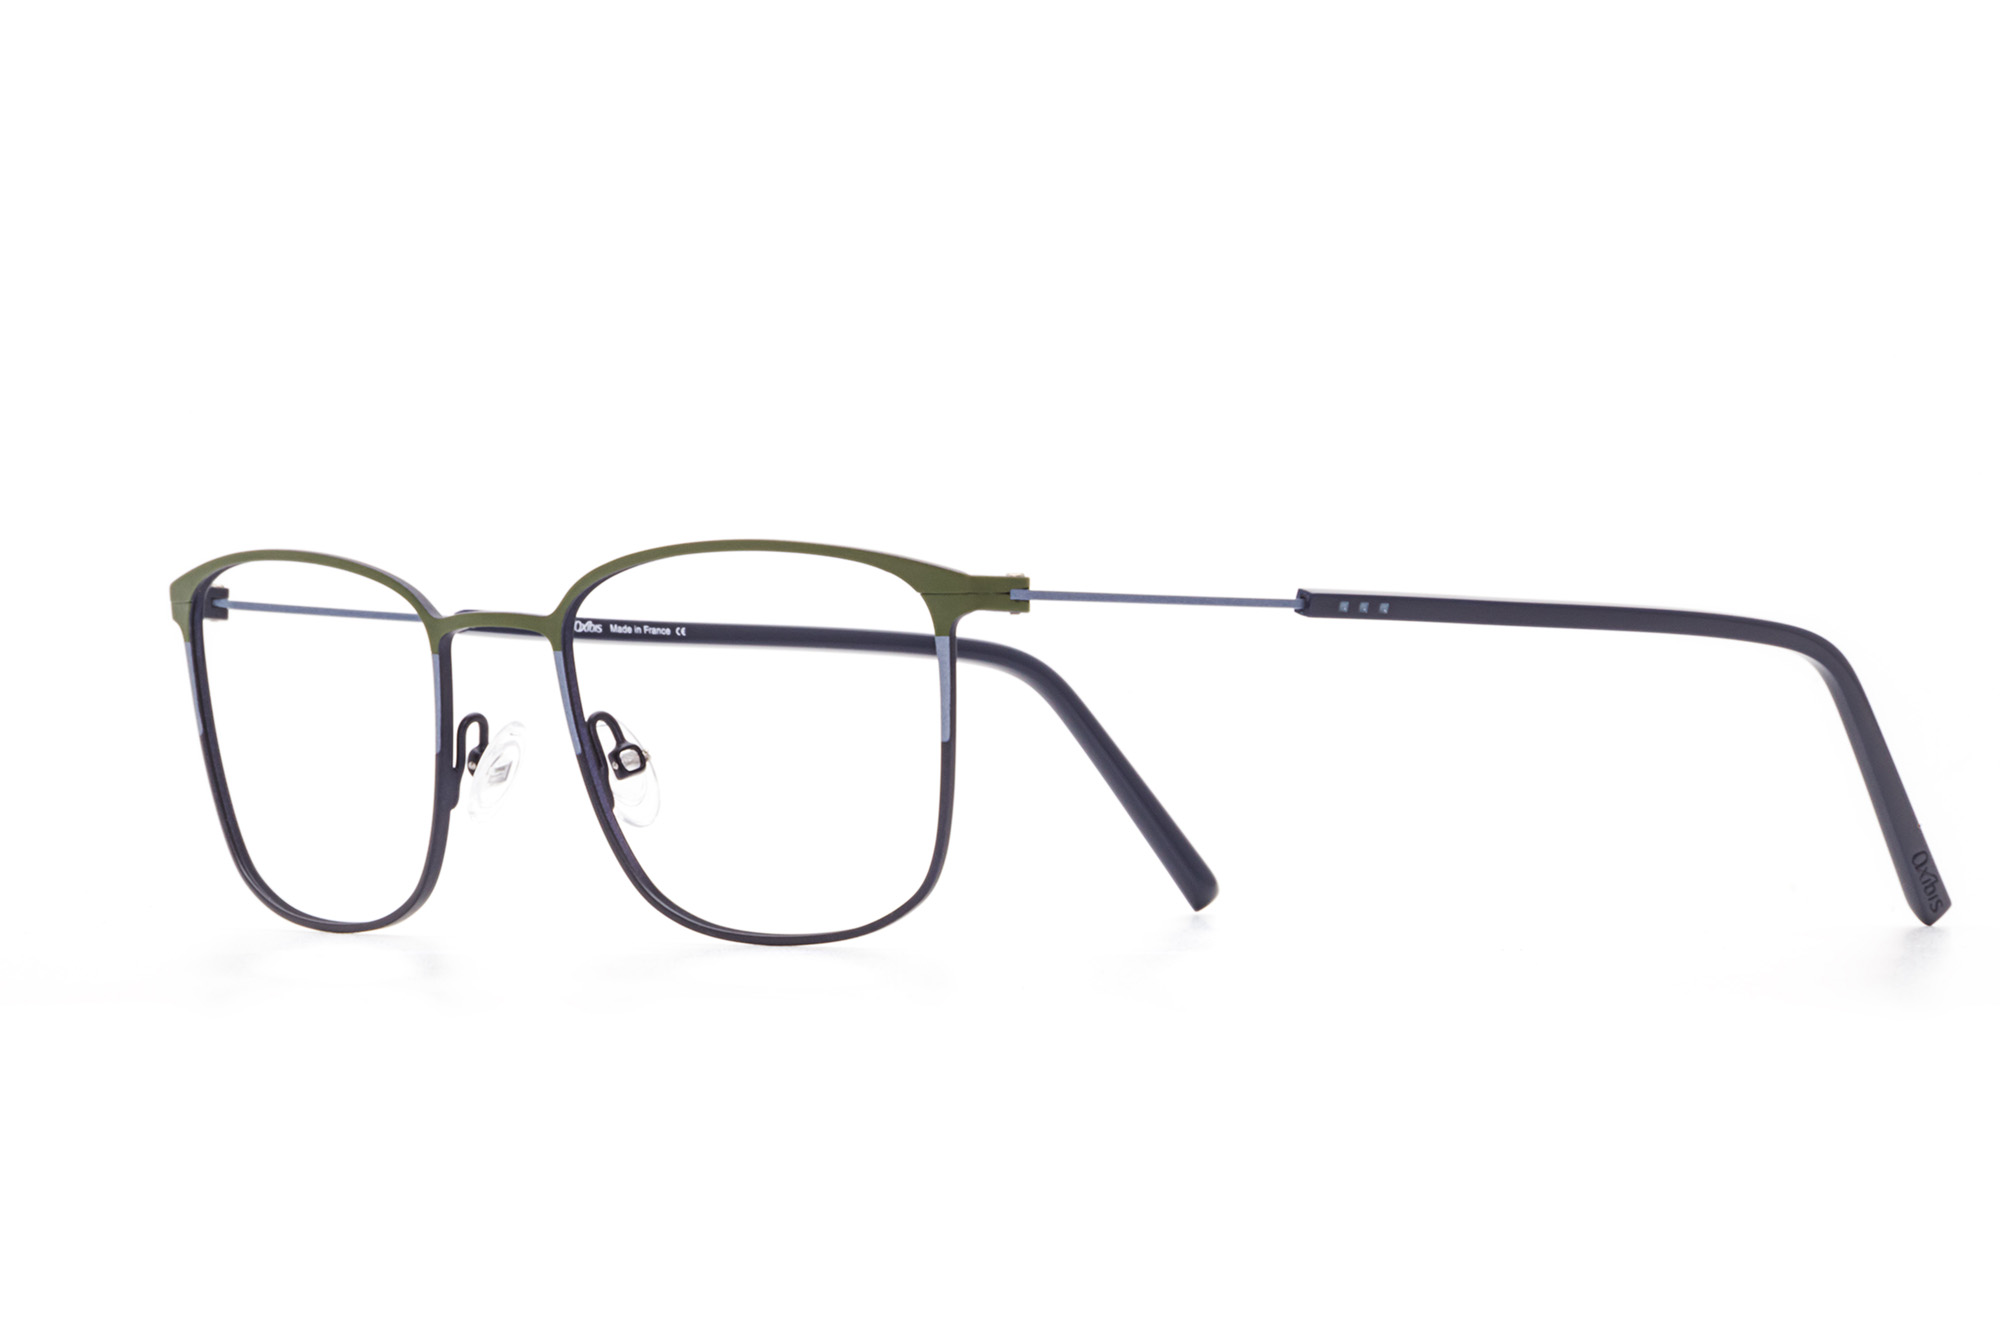 Kullanıma hazır optik tarzda işlenmiş camları ve optik uyumlu çerçevesiyle Oxibis Boost BO3C6 51 orta ekartman yeşil, mavi ve lacivert renkli dikdörtgen model erkek gözlüğünü optisyen veya gözlükçülerin sunacağı numarasız veya numaralı cam özelleştirmeleriyle size en yakın gözlükçüden satın alabilirsiniz.